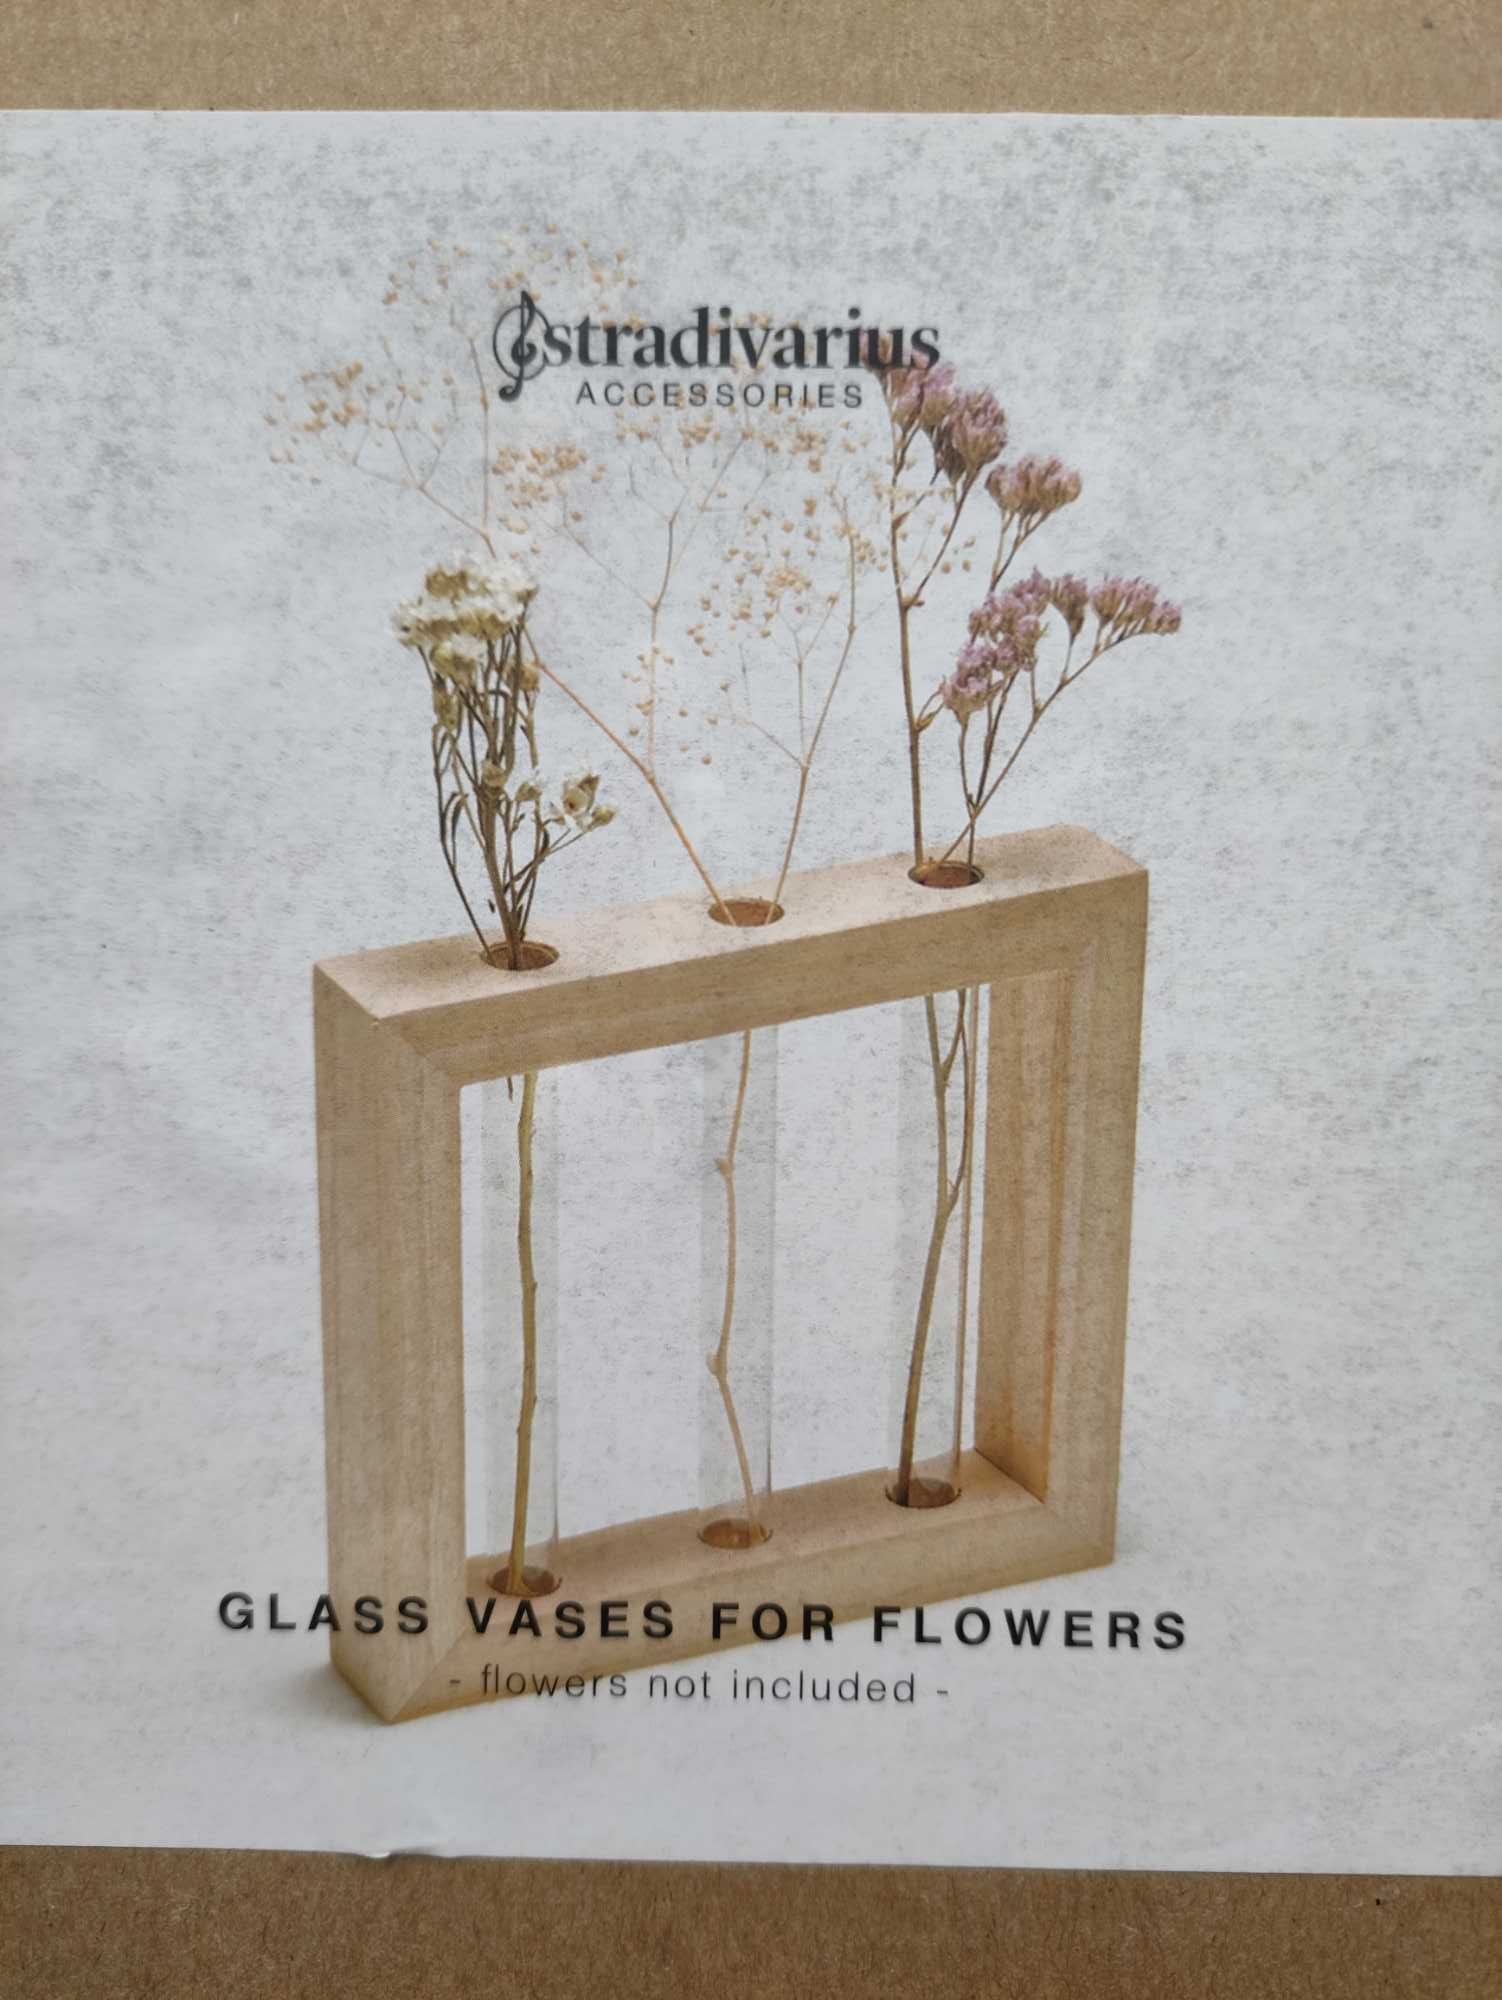 Mini expositores / jarros / vasos para flores | Stradivarius